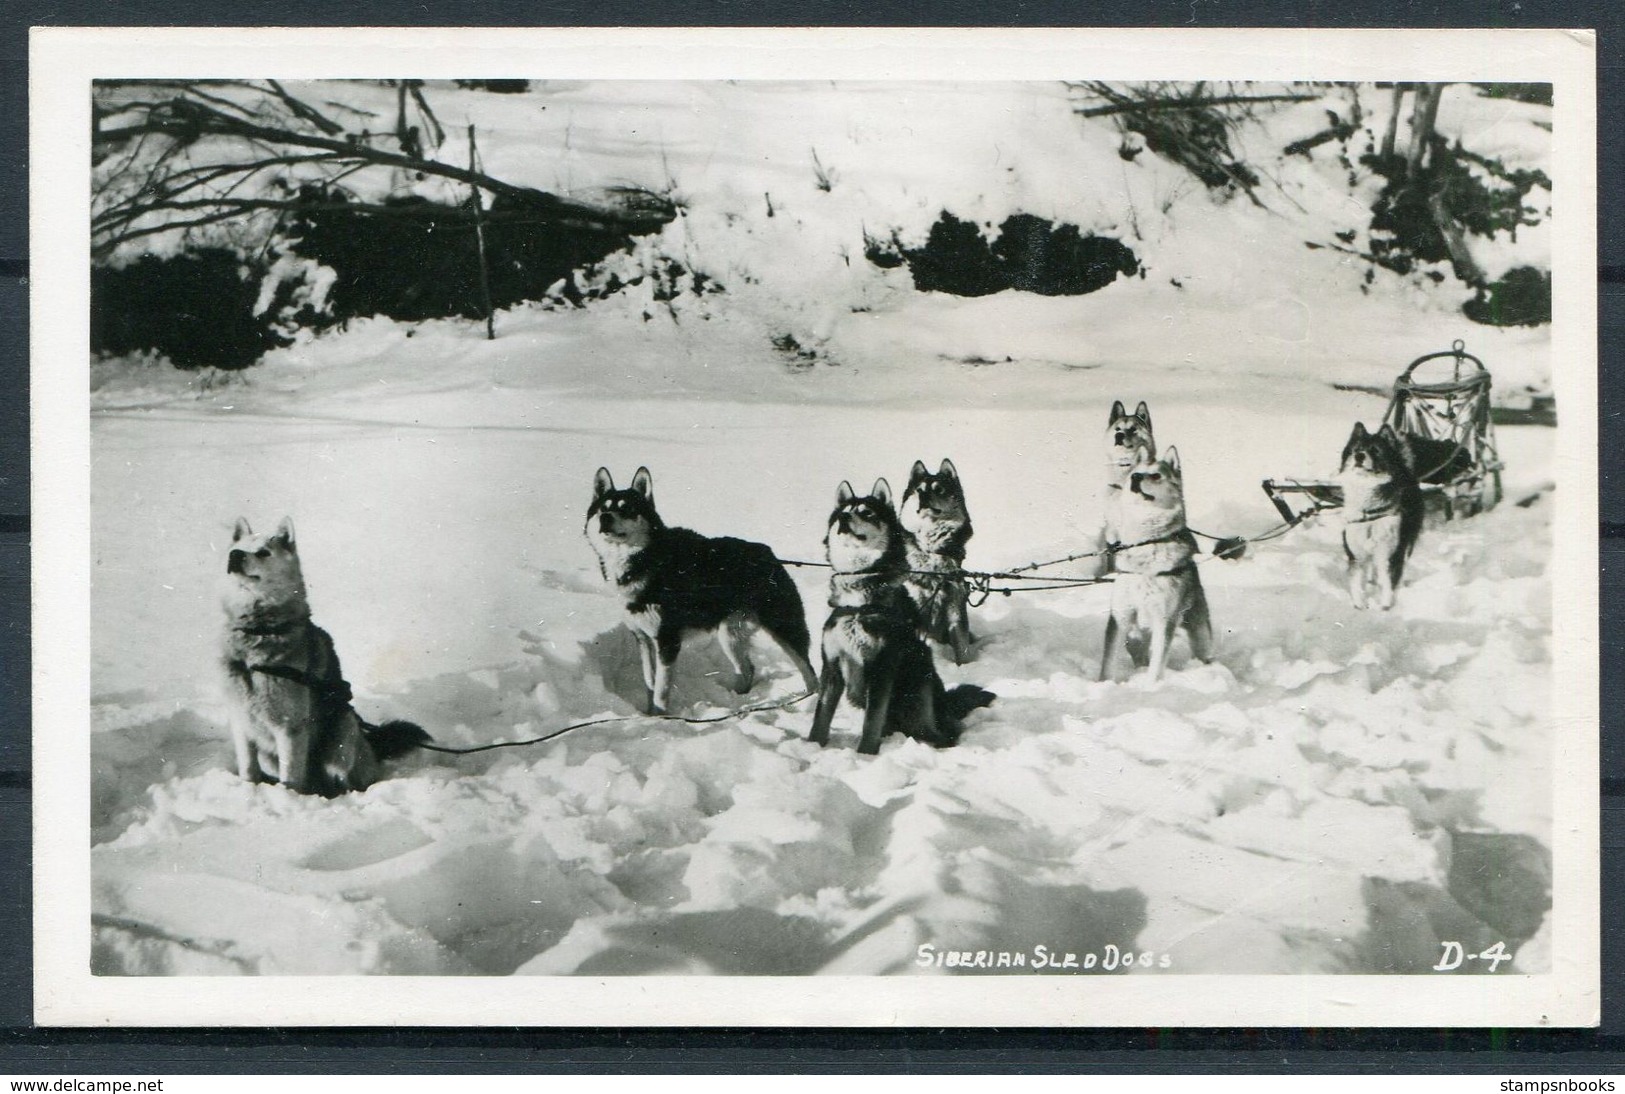 Siberian Sled Dogs RP Polar Postcard - Dogs